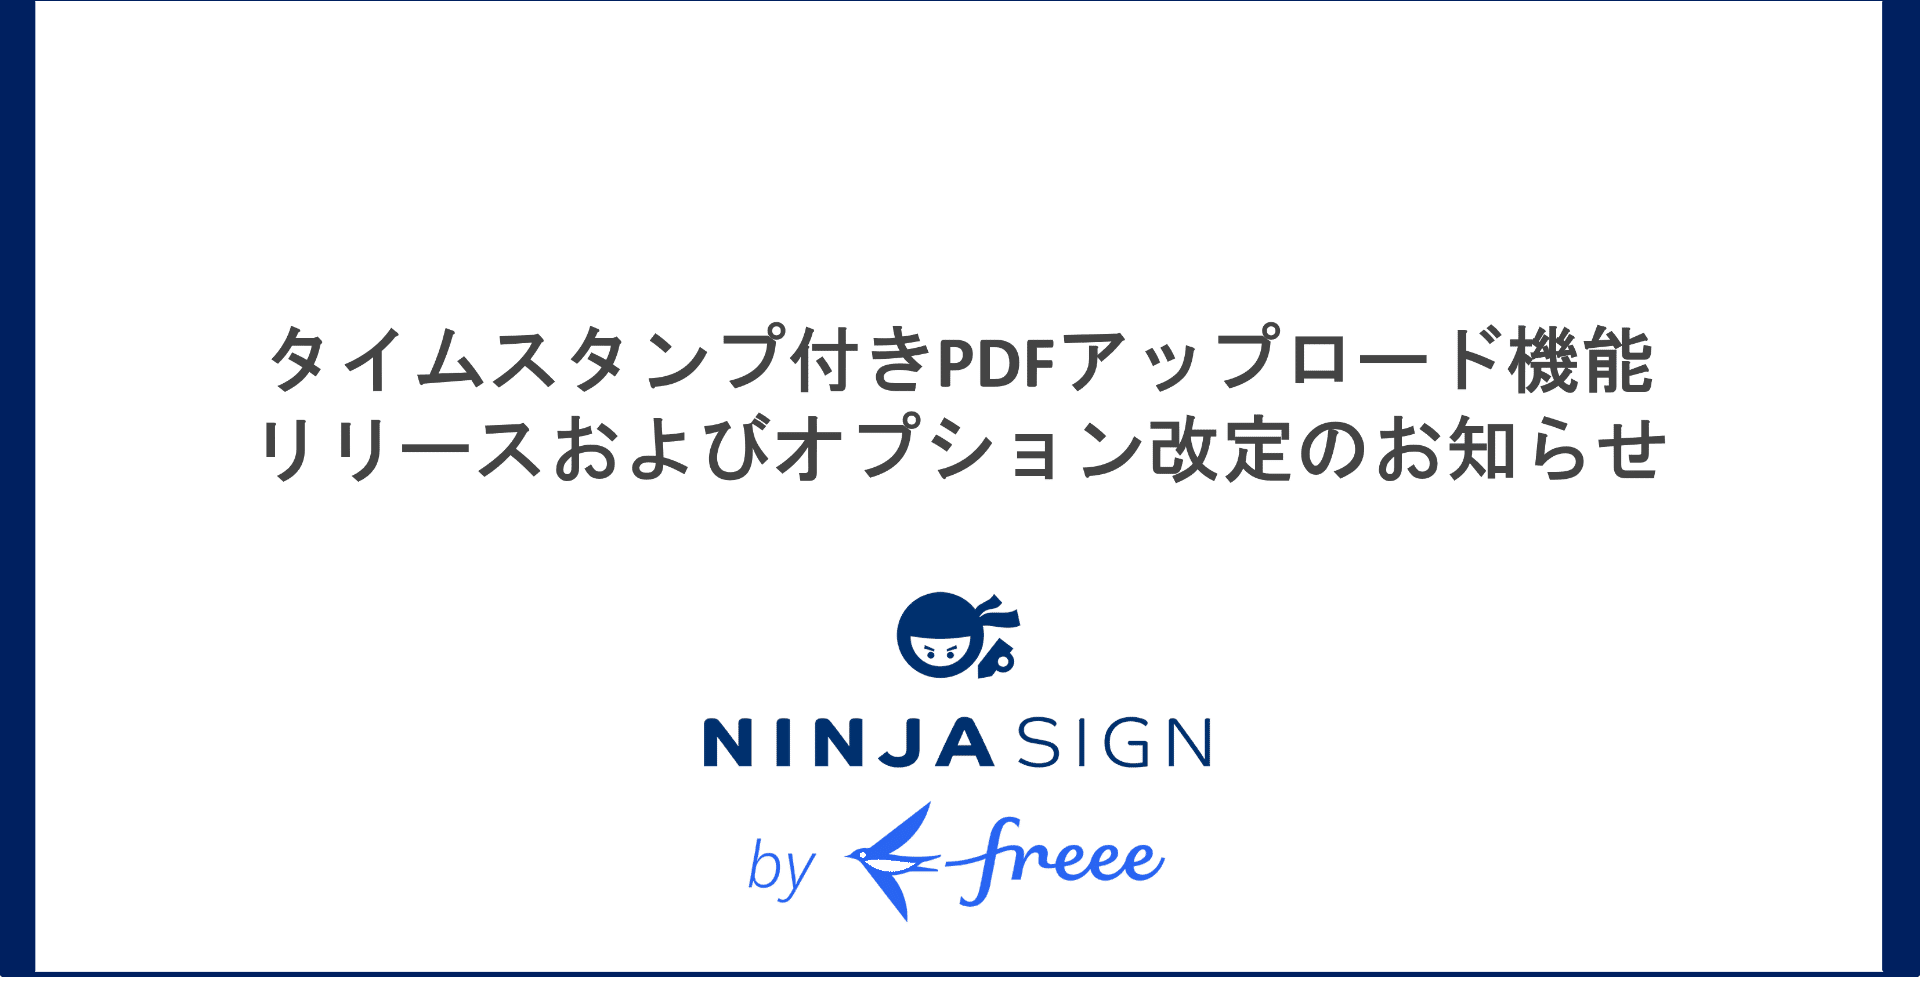 タイムスタンプ付きpdfアップロード機能リリースおよびオプション改定のお知らせ Ninja Sign By Freee 公式 Note